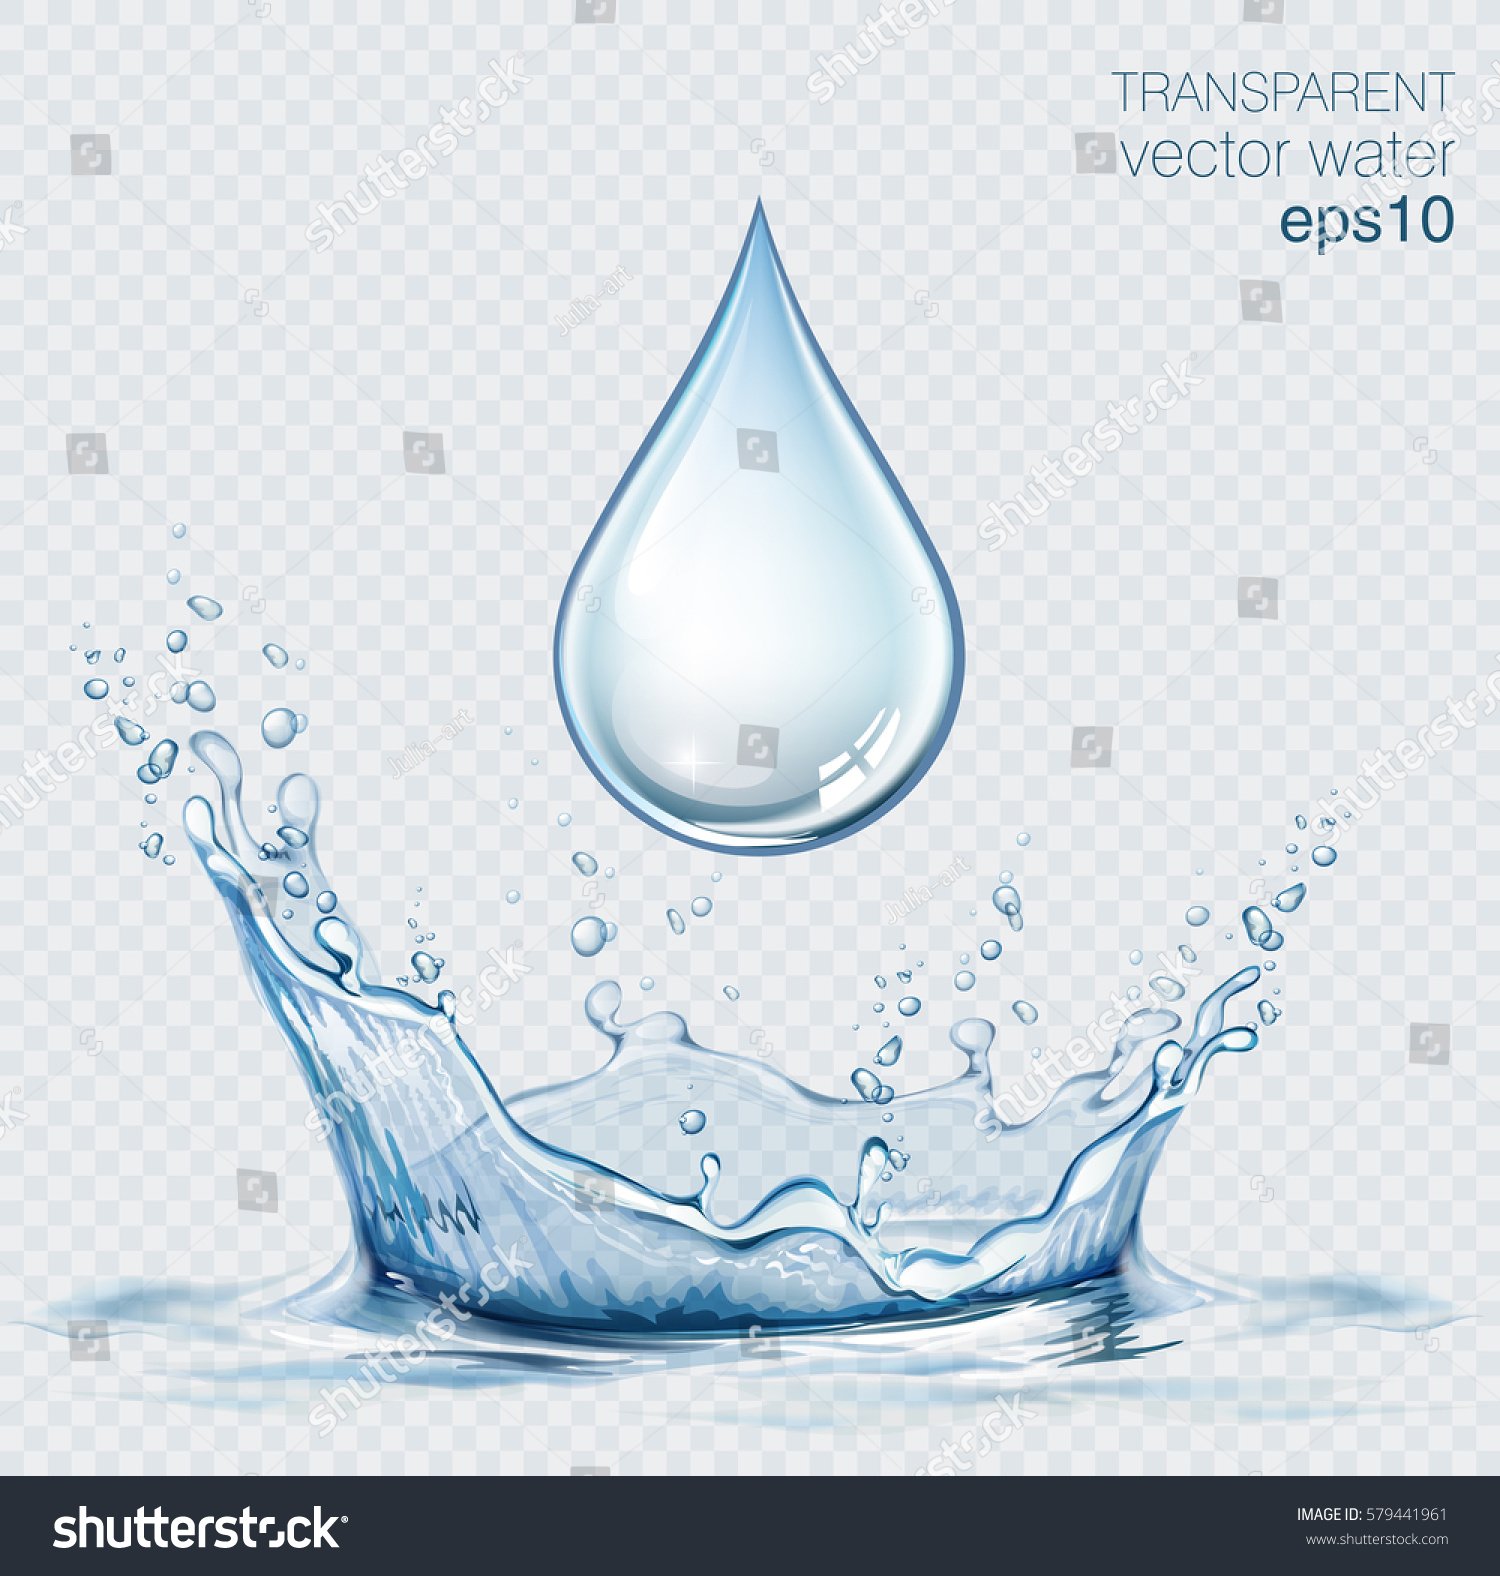 Transparent Vector Water Splash Water Drop Stock Vector 579441961 ...